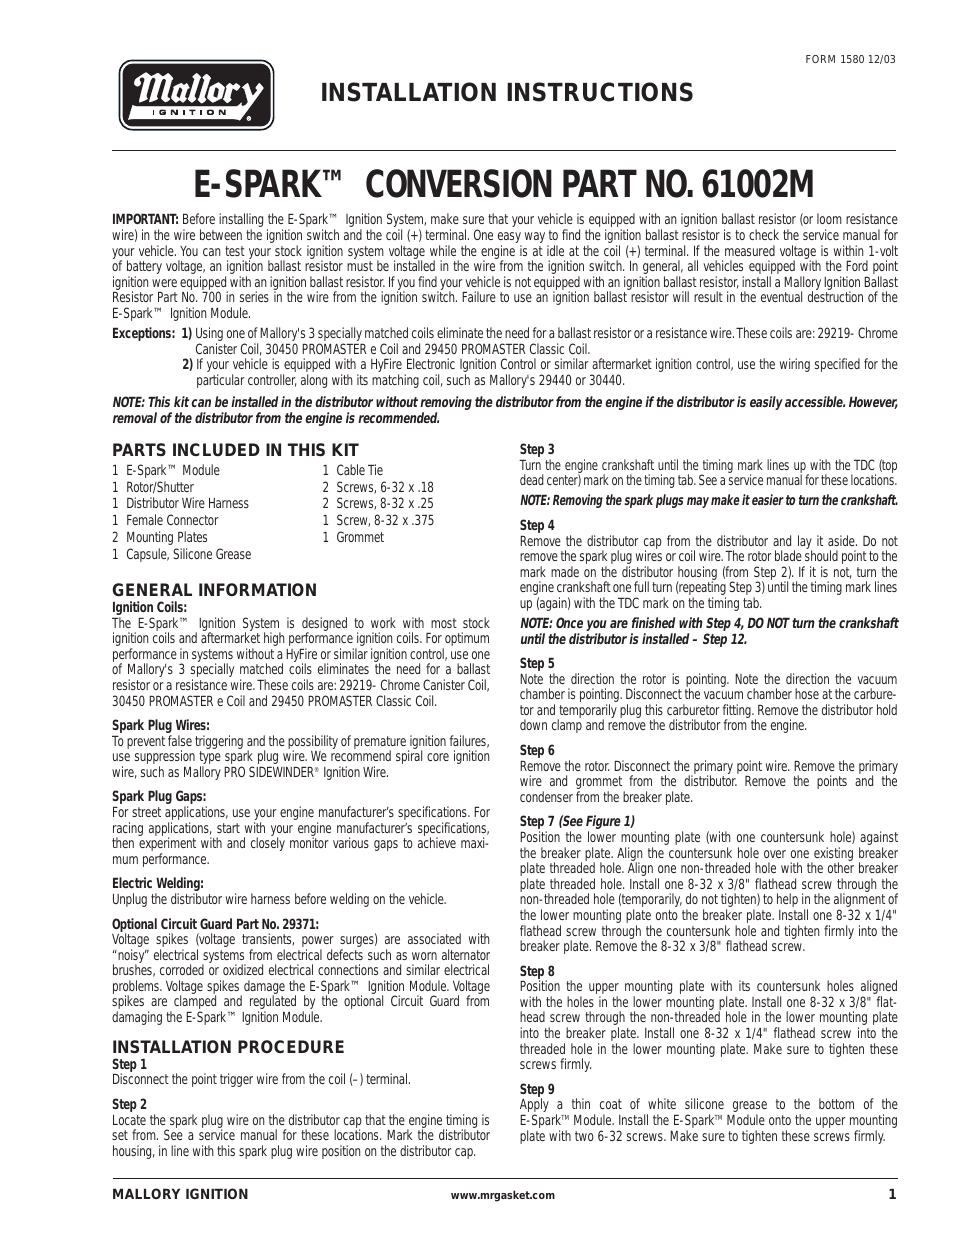 Mallory E-SPARK CONVERSION 61002M